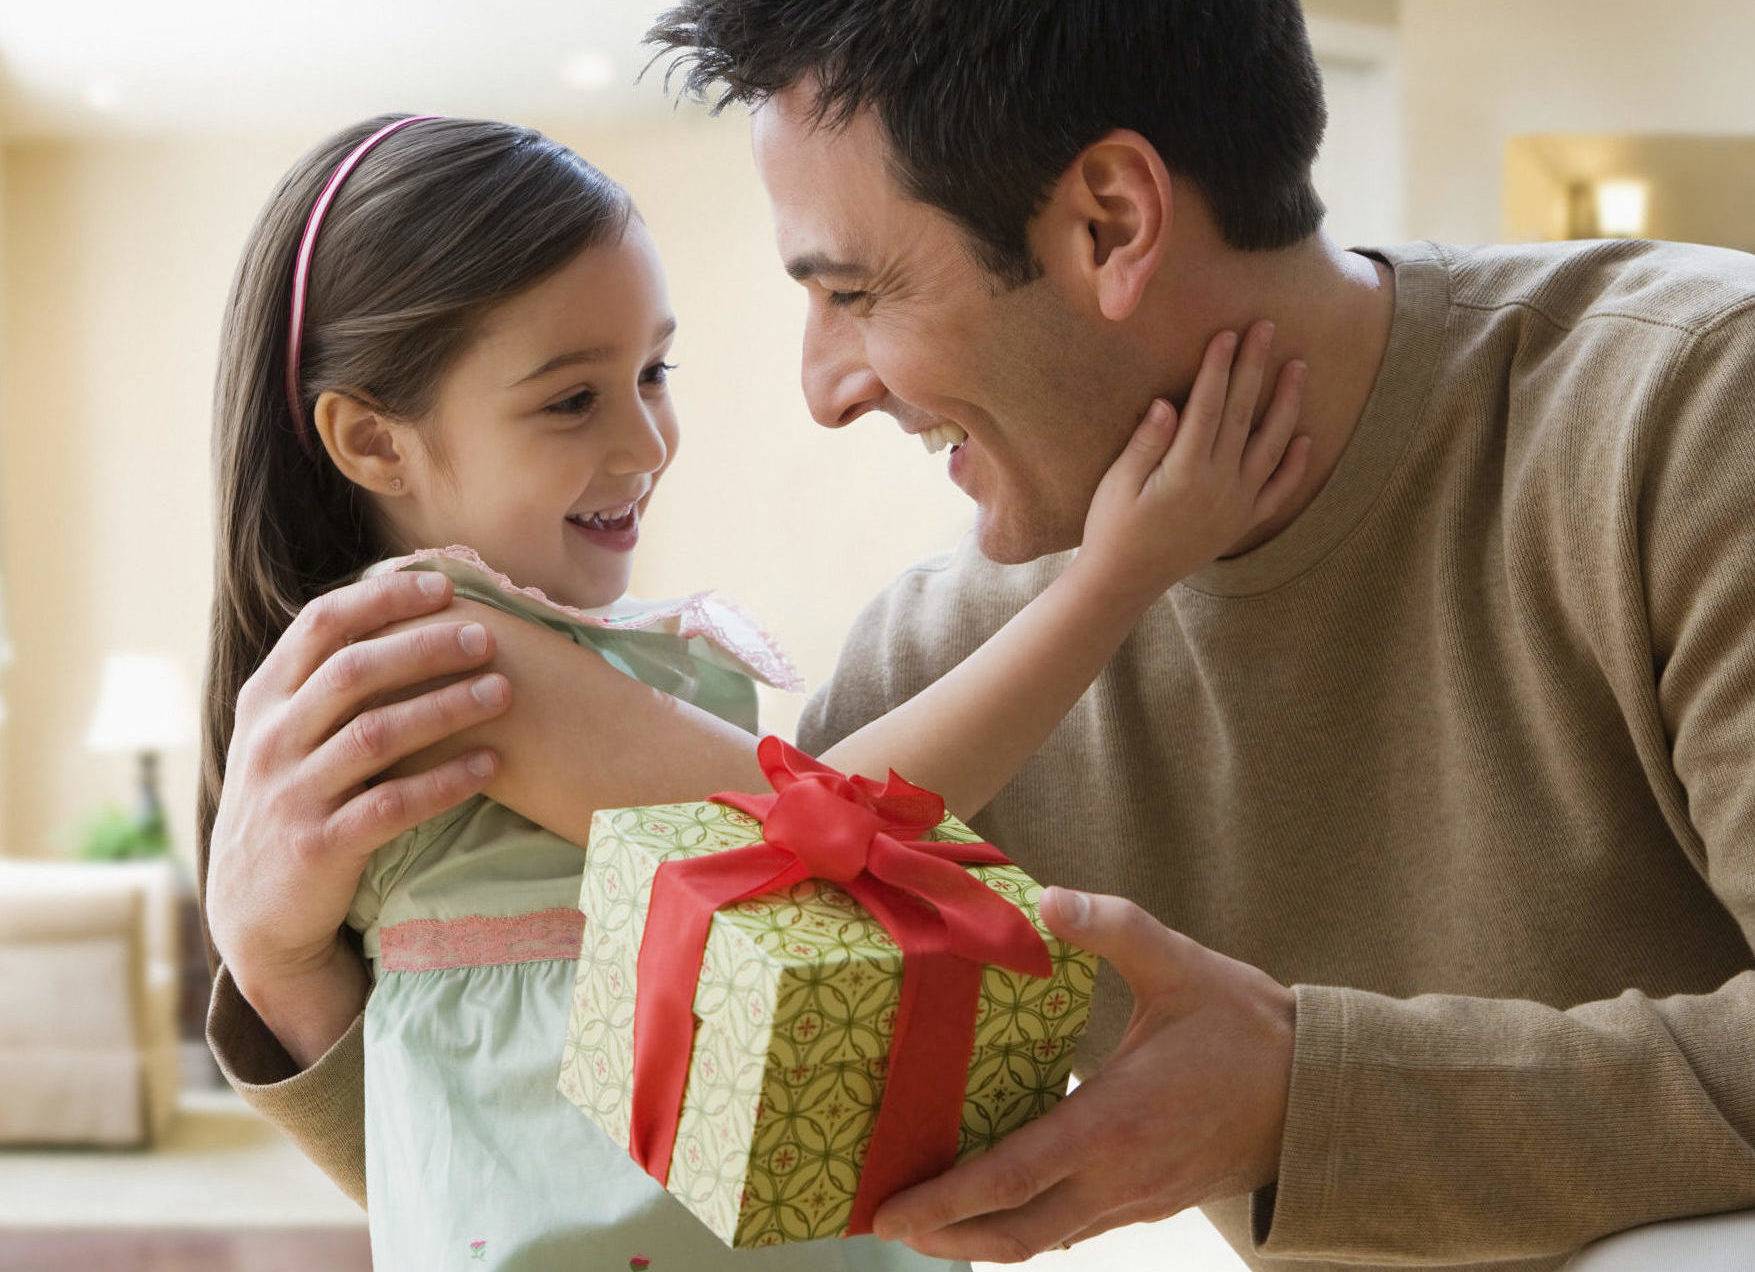 Что дарят на рождество: примеры подарков для любимого человека. что подарить парню на рождество